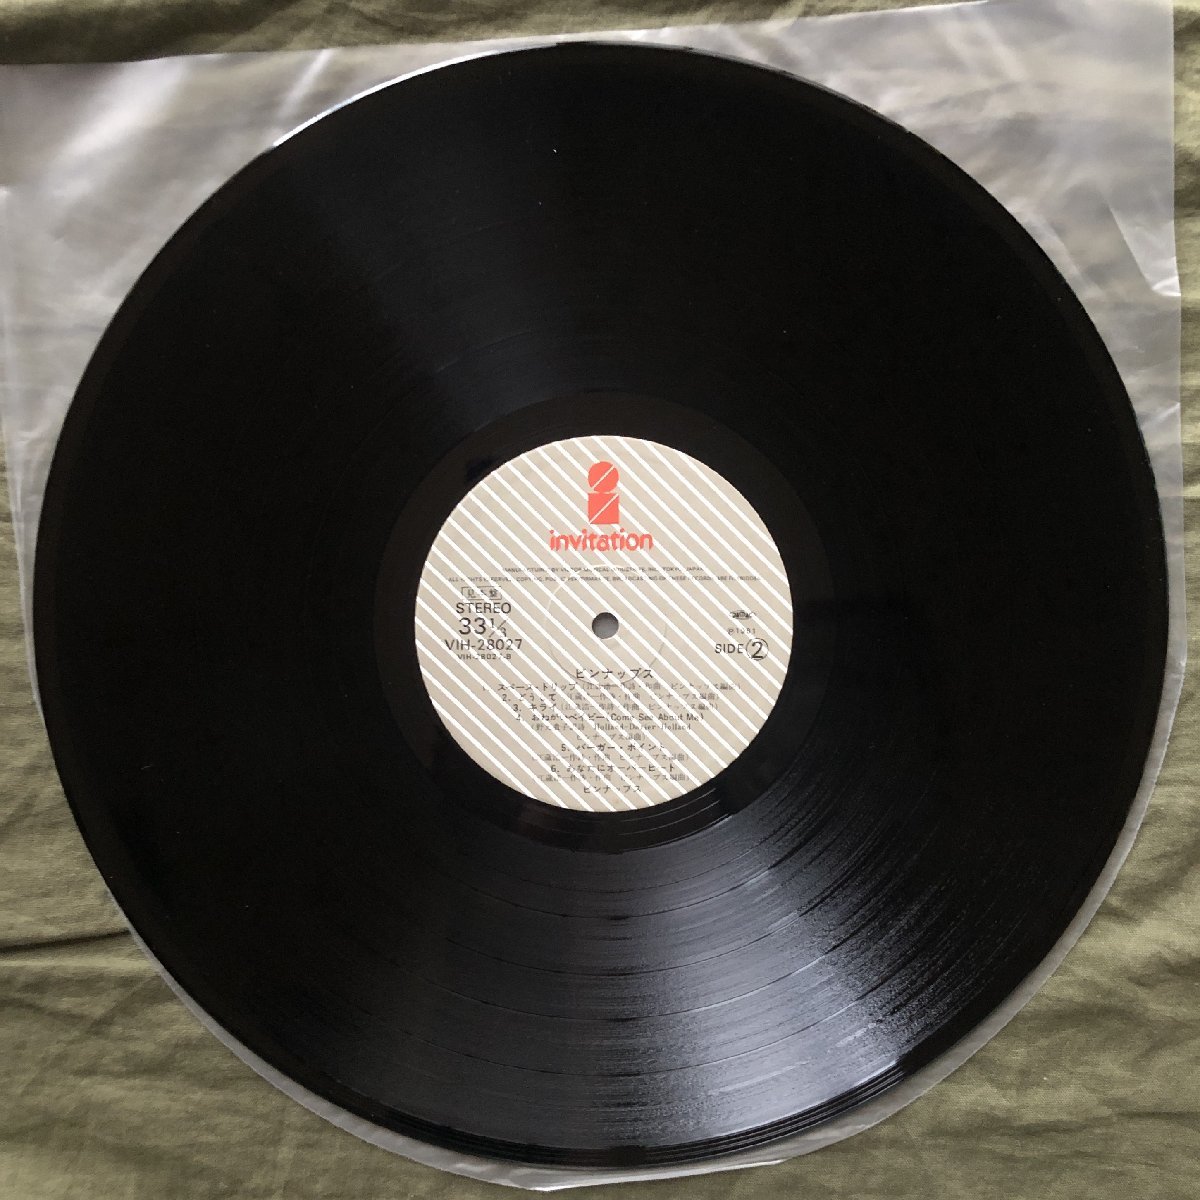 傷なし美盤 良ジャケ レア盤 プロモ盤 1980年 オリジナルリリース盤 ピンナップス Pinups LPレコード S/T 名盤 リタ 当時ものプロモ資料付_画像10